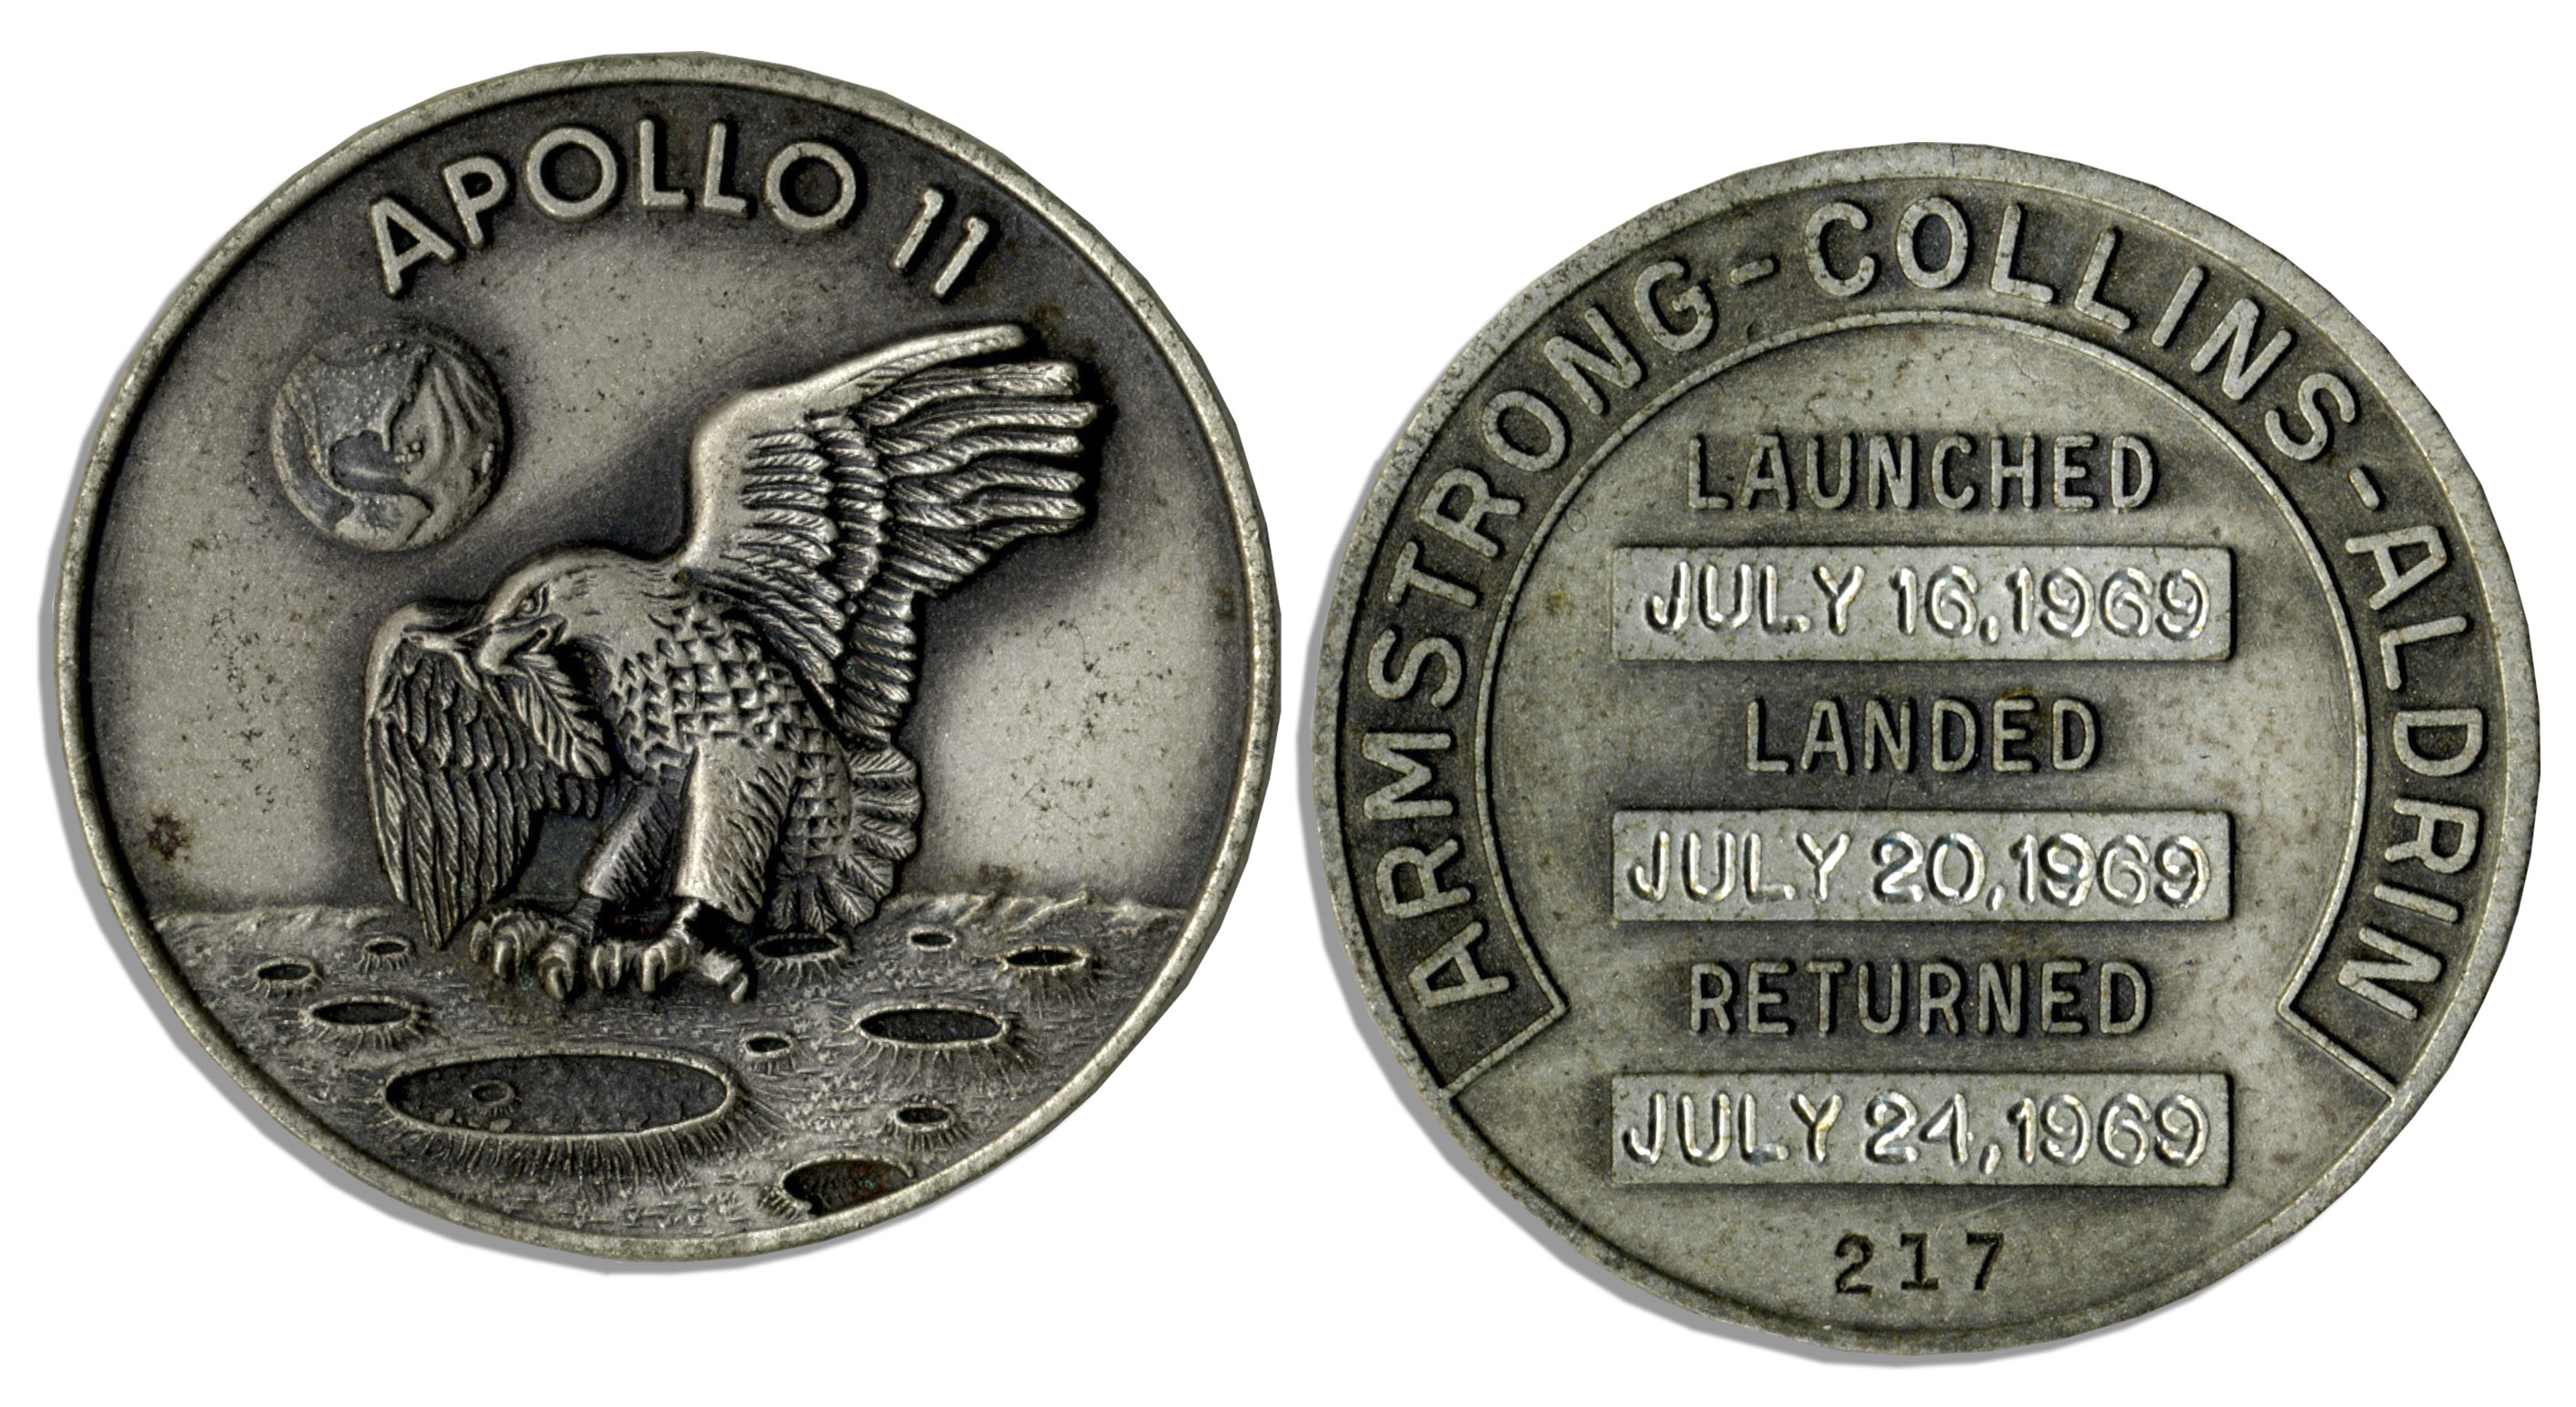 Apollo 11 Robbins medal